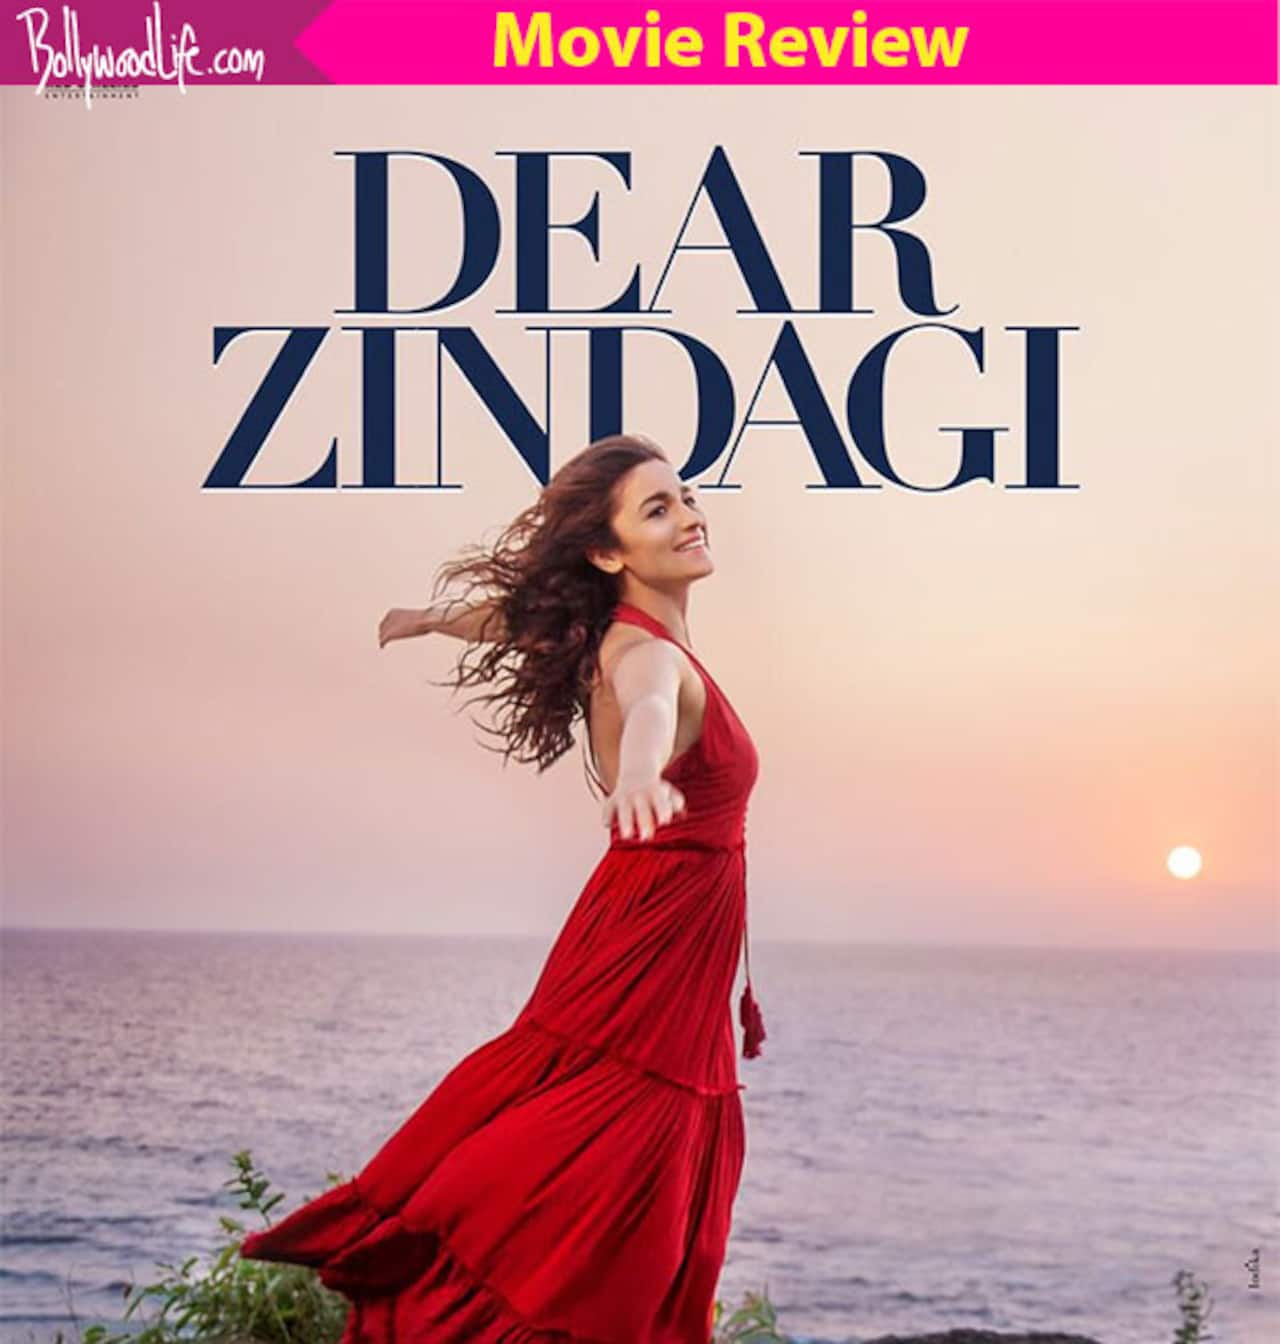 Dear Zindagi Review Alia Bhatt And Shah Rukh Khan Take Home All The Praises For Their